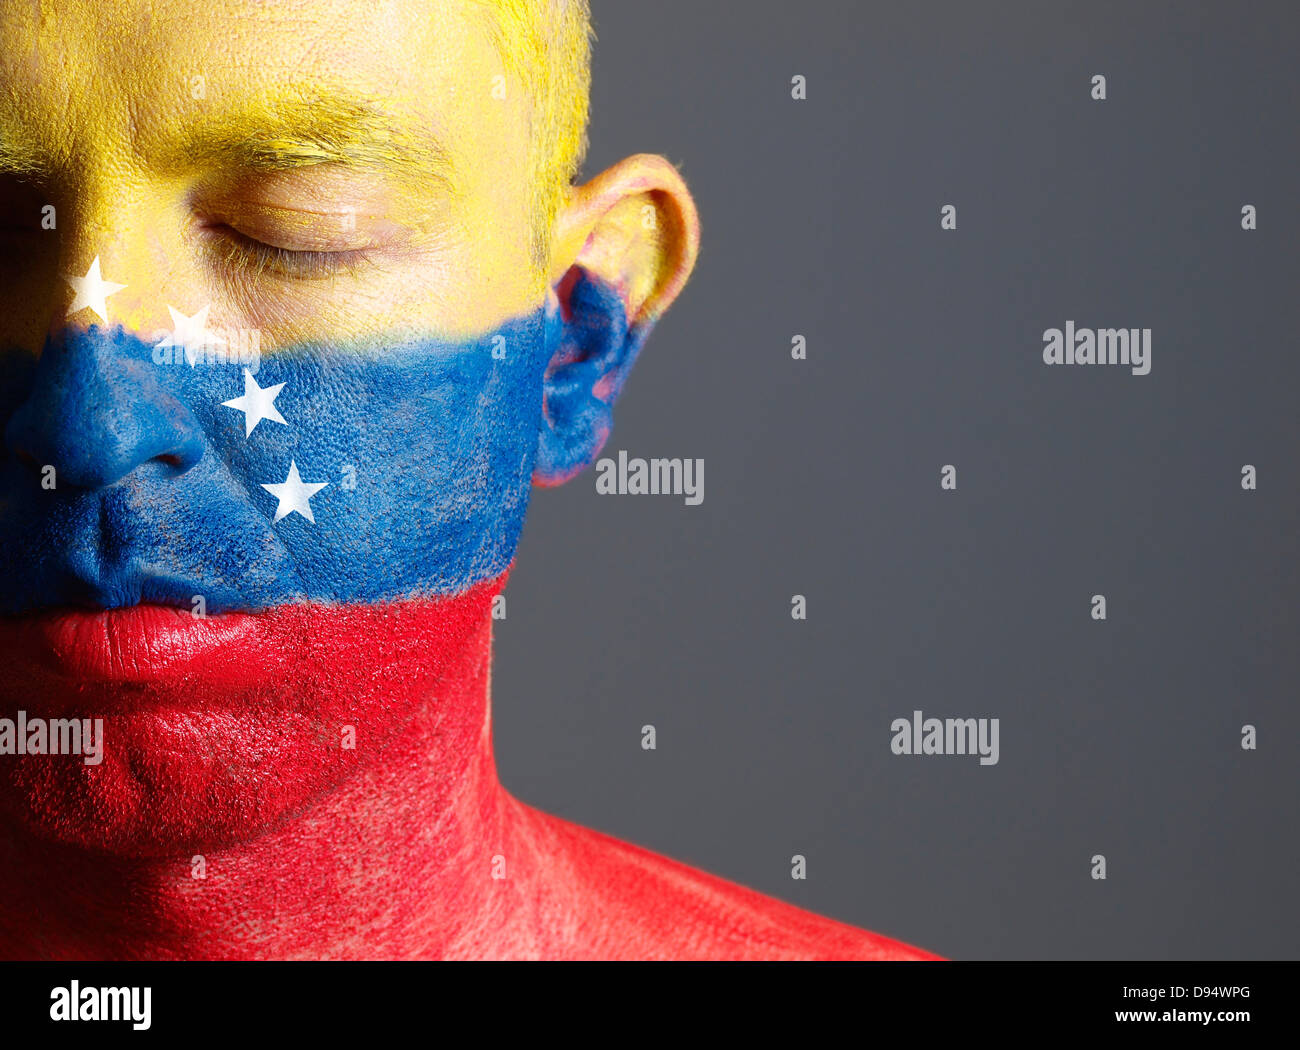 El hombre y su cara pintada con la bandera de Venezuela. El hombre tiene sus ojos cerrados y composición fotográfica deja sólo la mitad de th Foto de stock